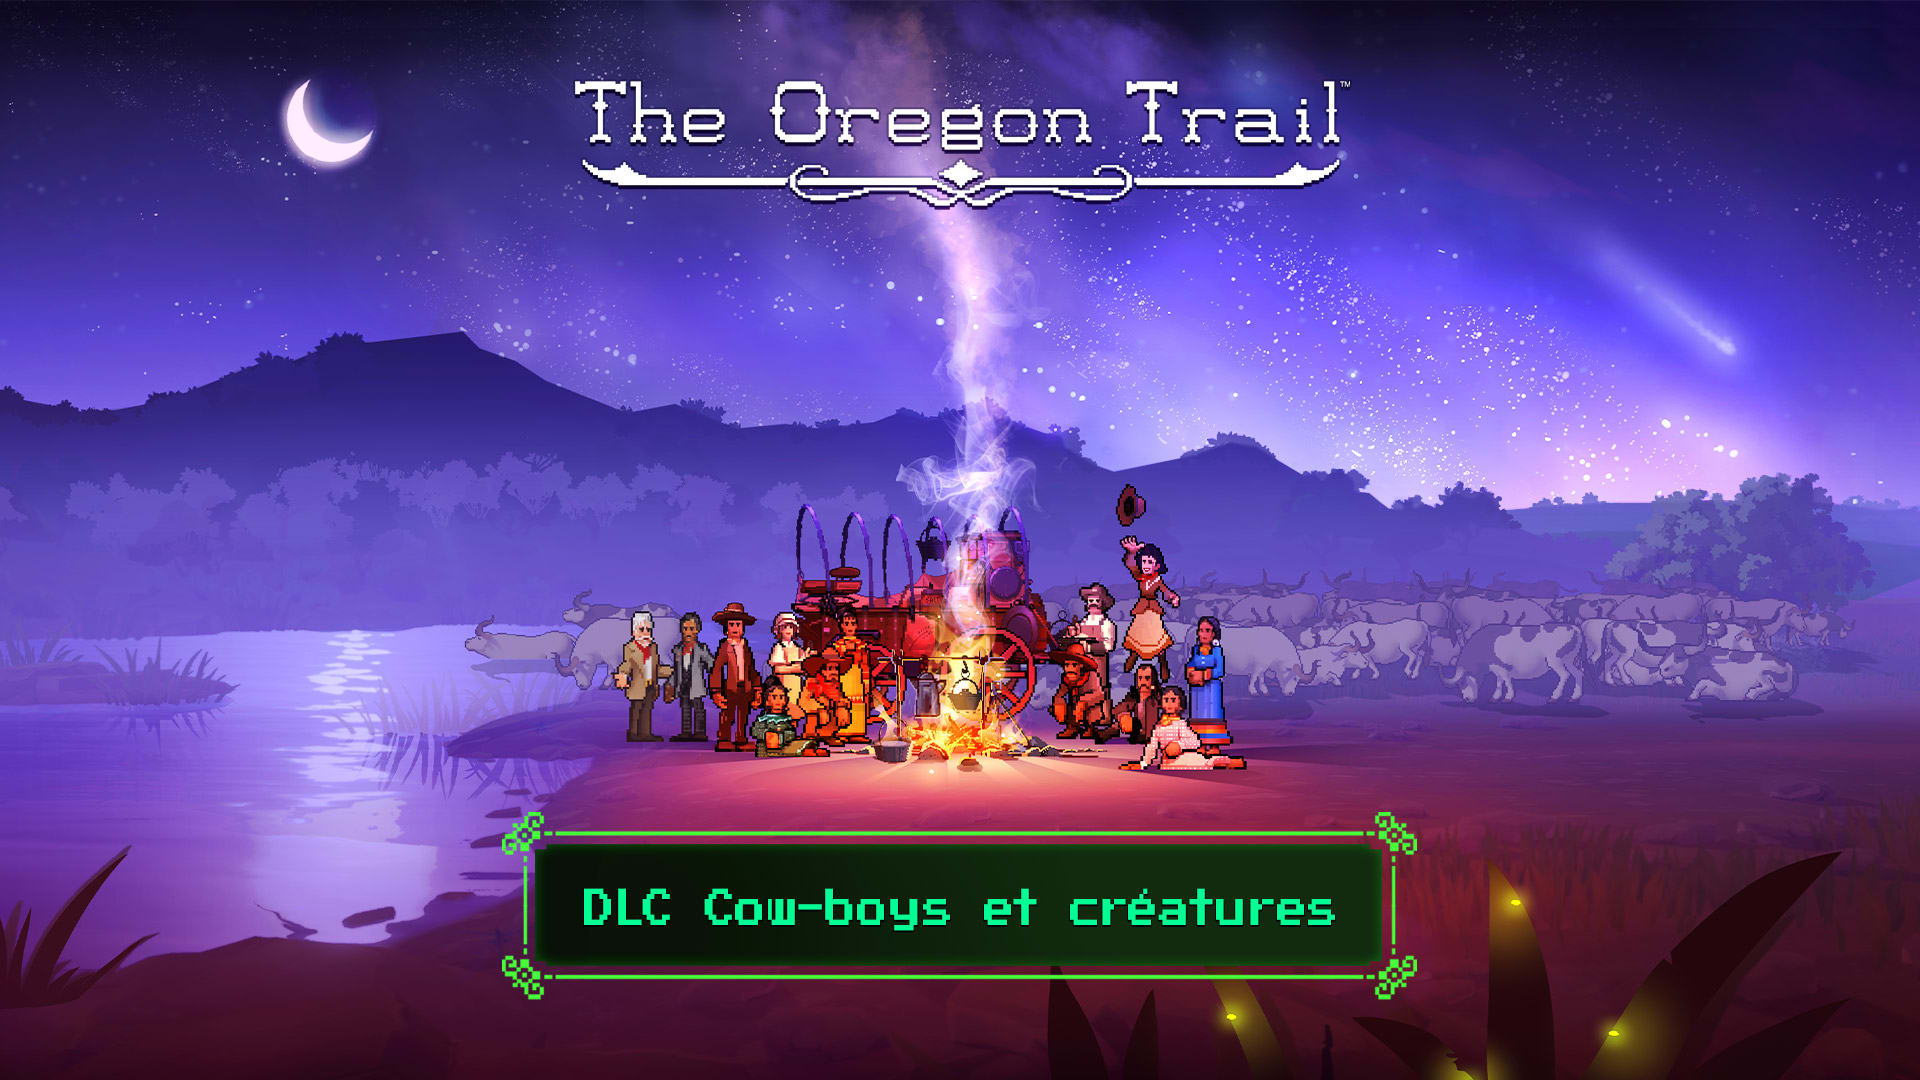 DLC Cow-boys et créatures